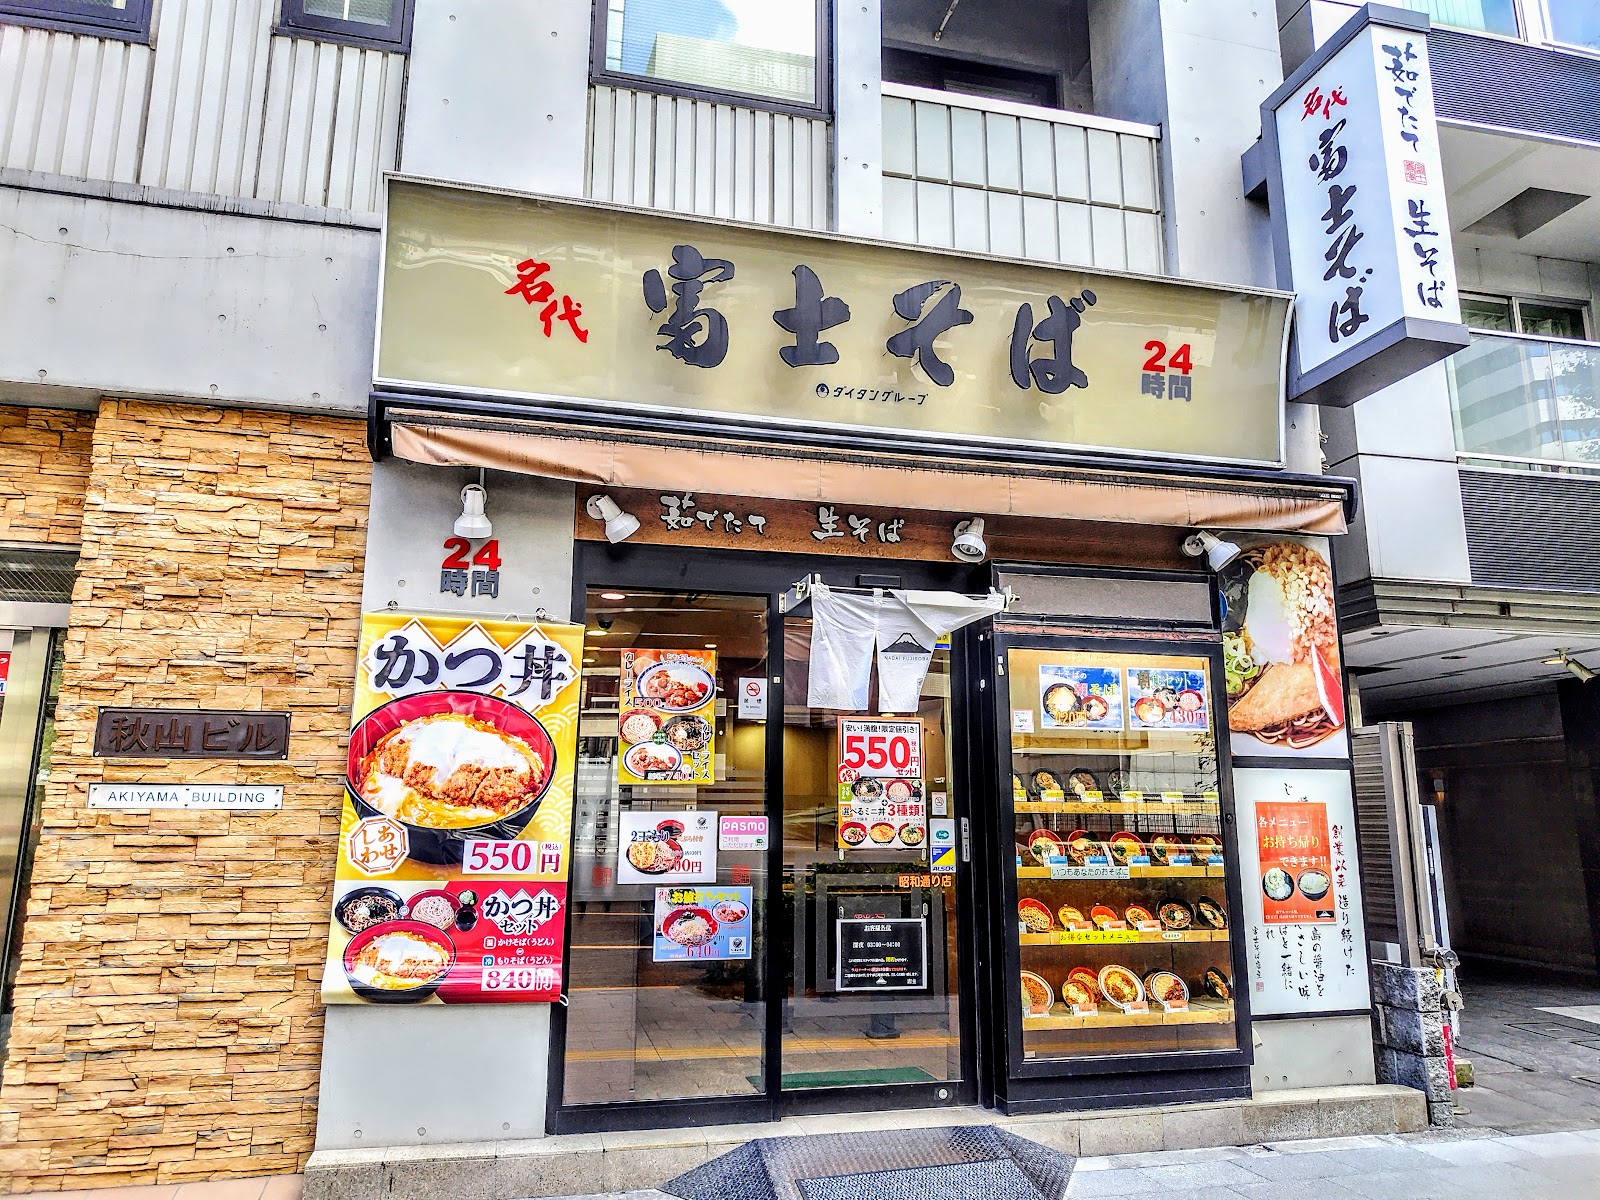 名代 富士そば 昭和通り店の風景